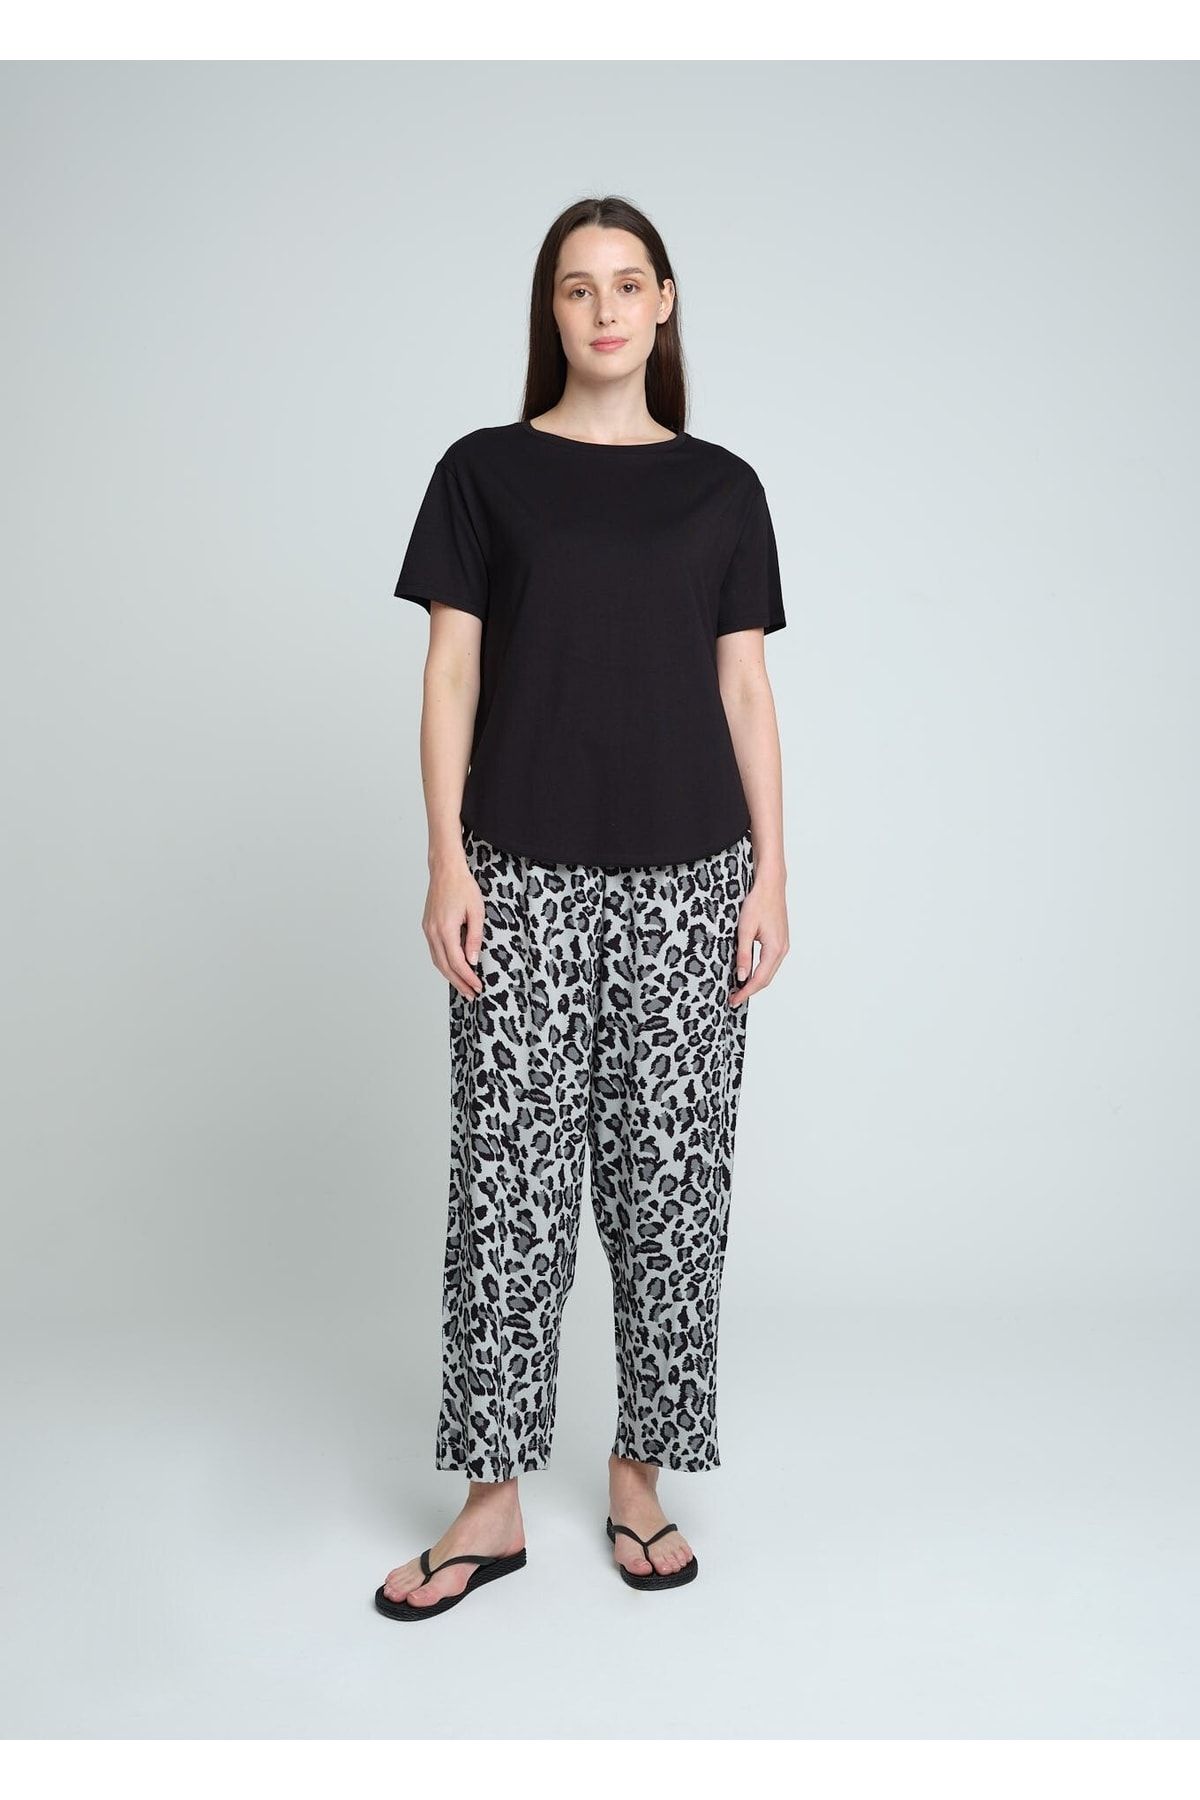 Pheri Kadın T.shirt & Leopar Desenli Pijama Takım | Amie